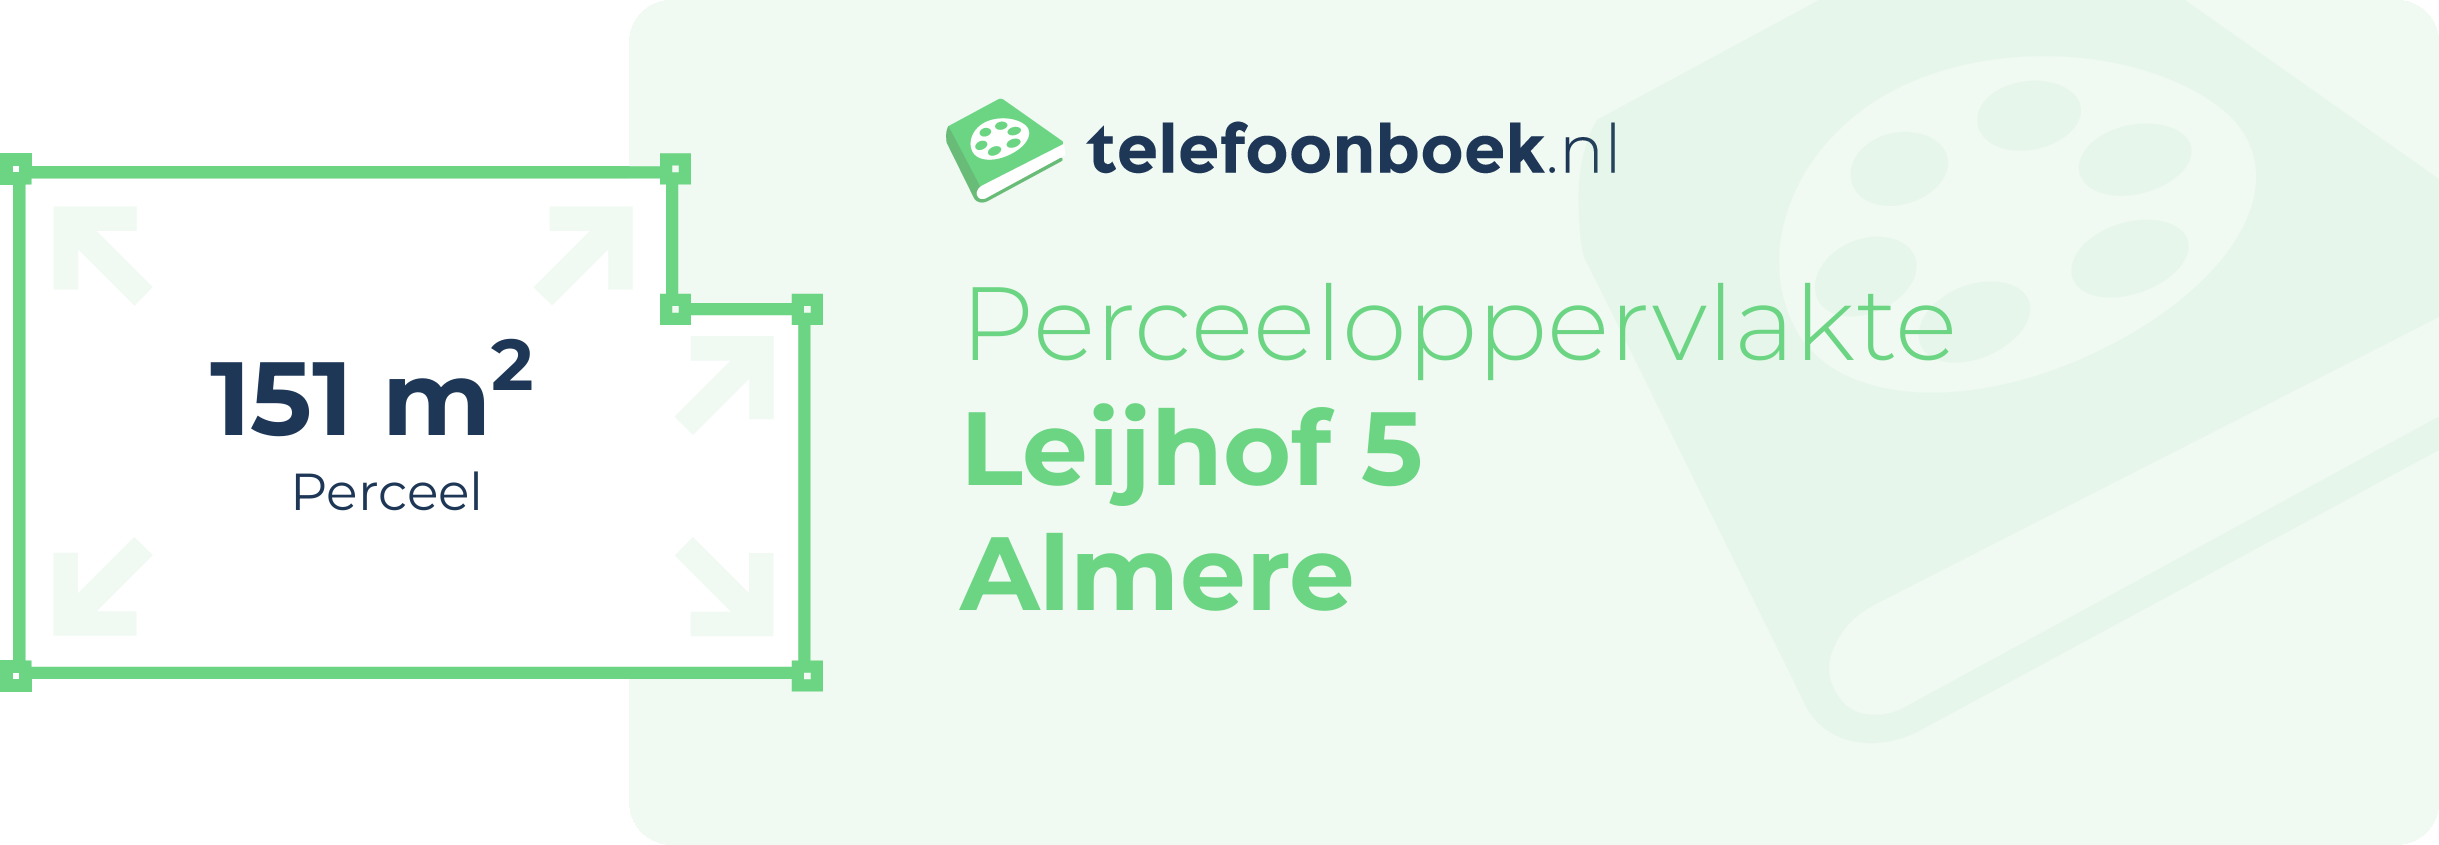 Perceeloppervlakte Leijhof 5 Almere